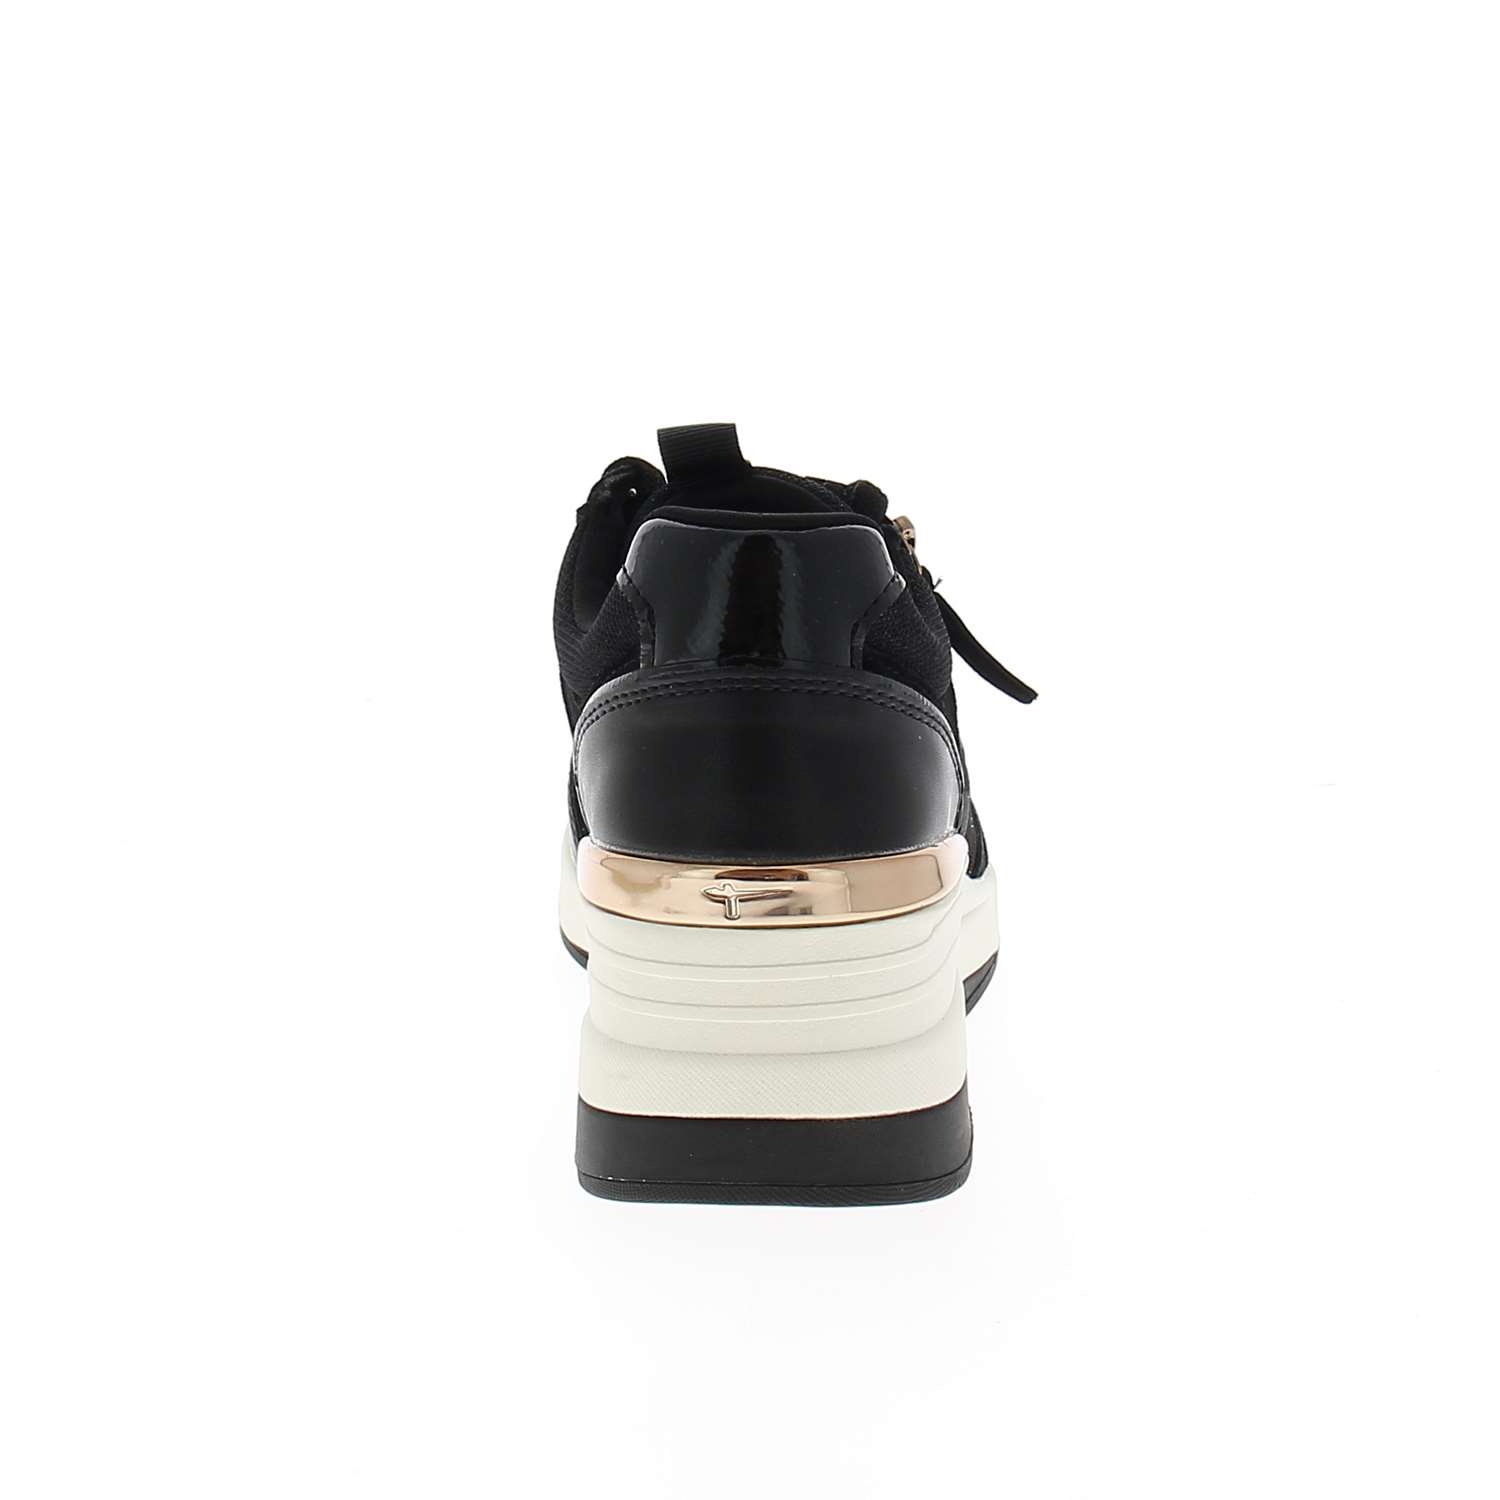 04 - TAVINAL - TAMARIS - Chaussures à lacets - Synthétique